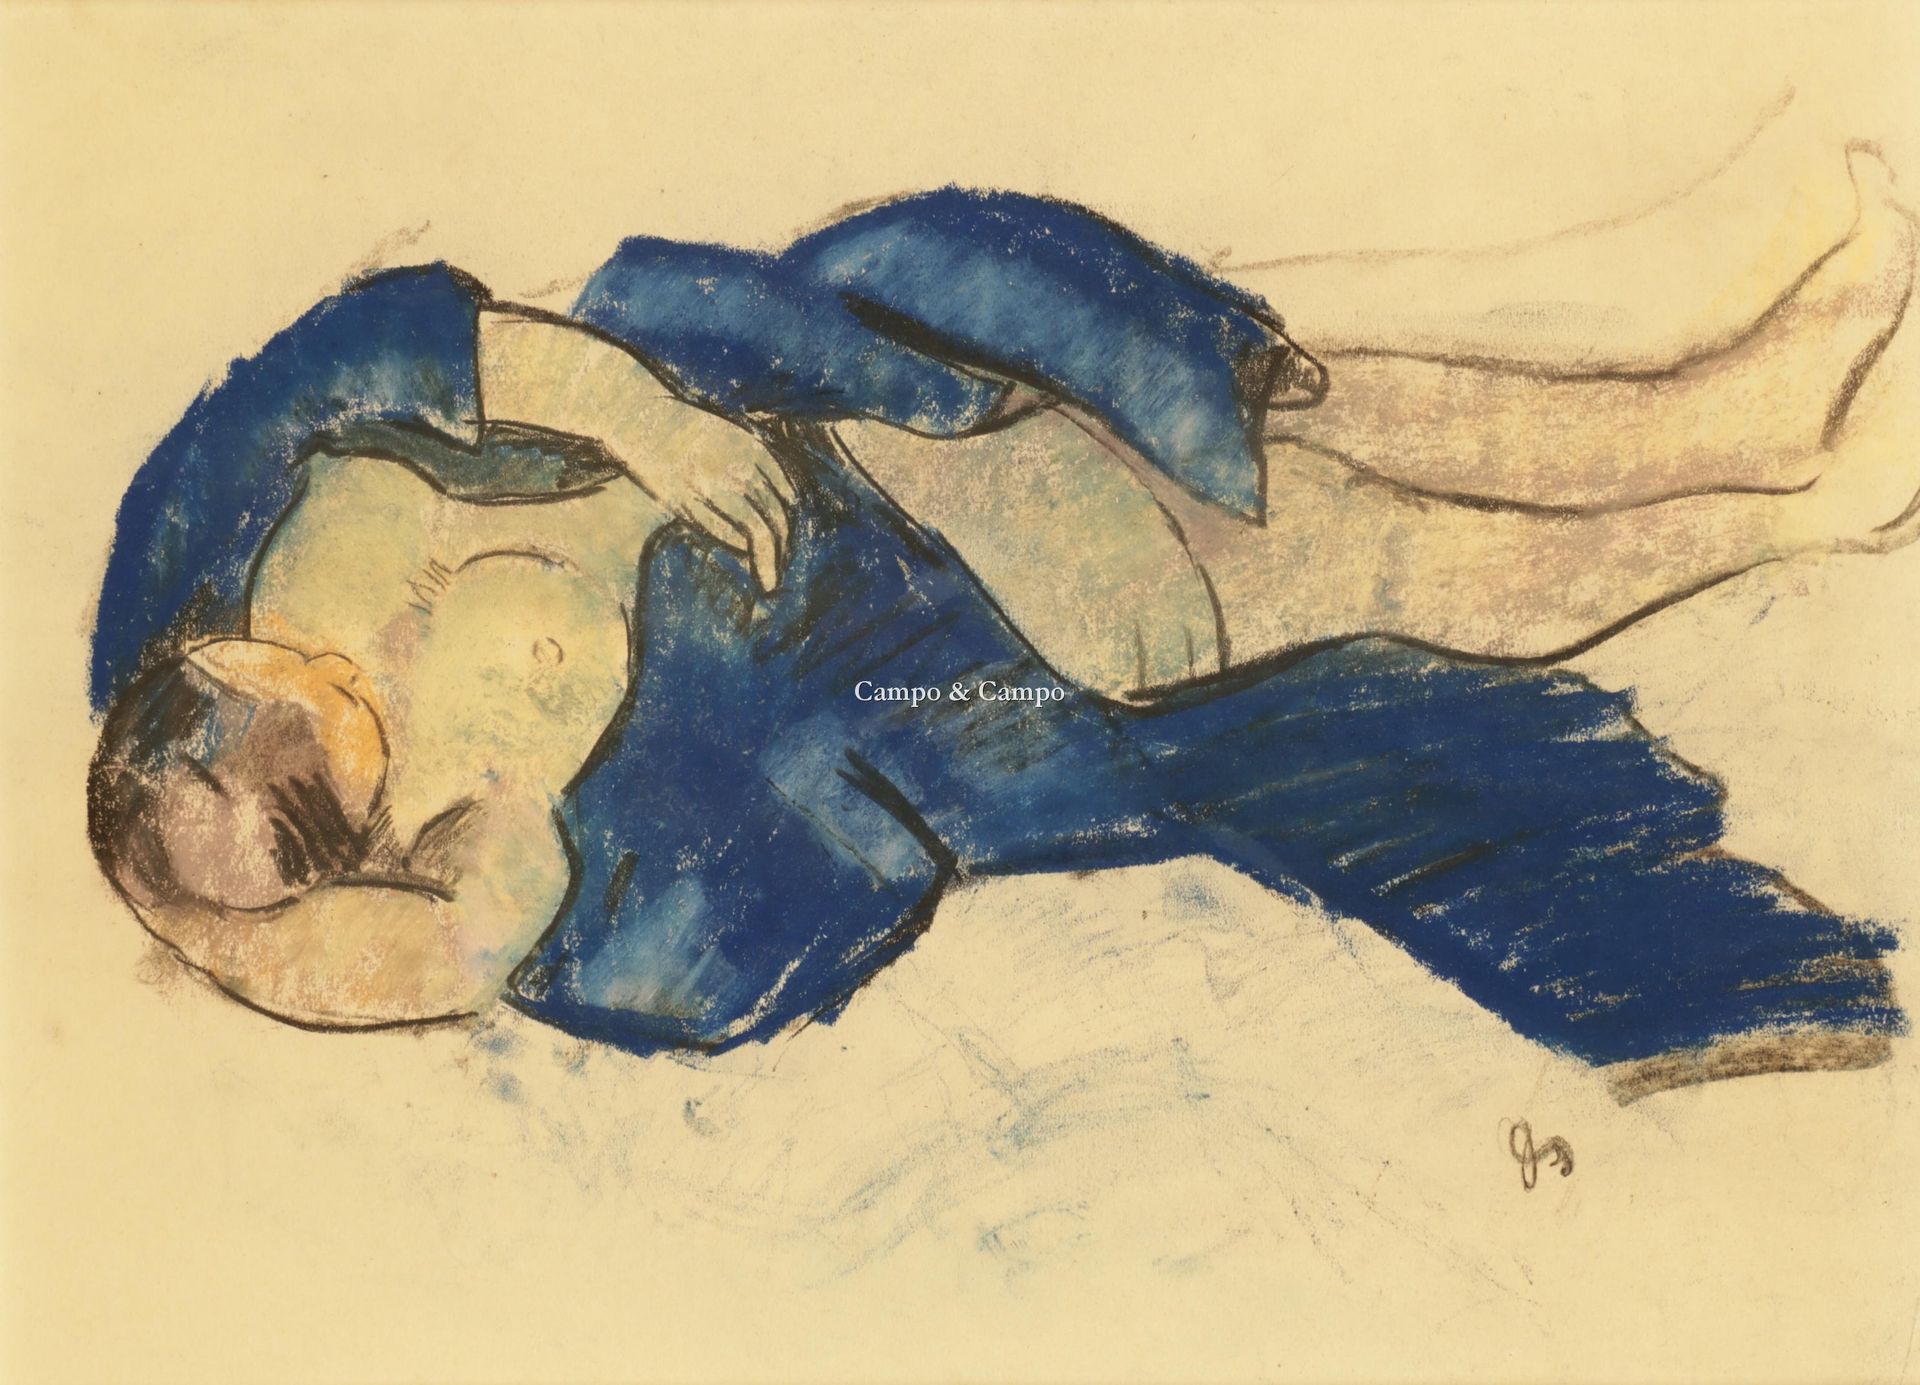 DE SUTTER JULES 1895-1970 裸体与蓝色斗篷
裸体与蓝色斗篷
创作技术。混合媒体/纸
单幅36 x 26厘米